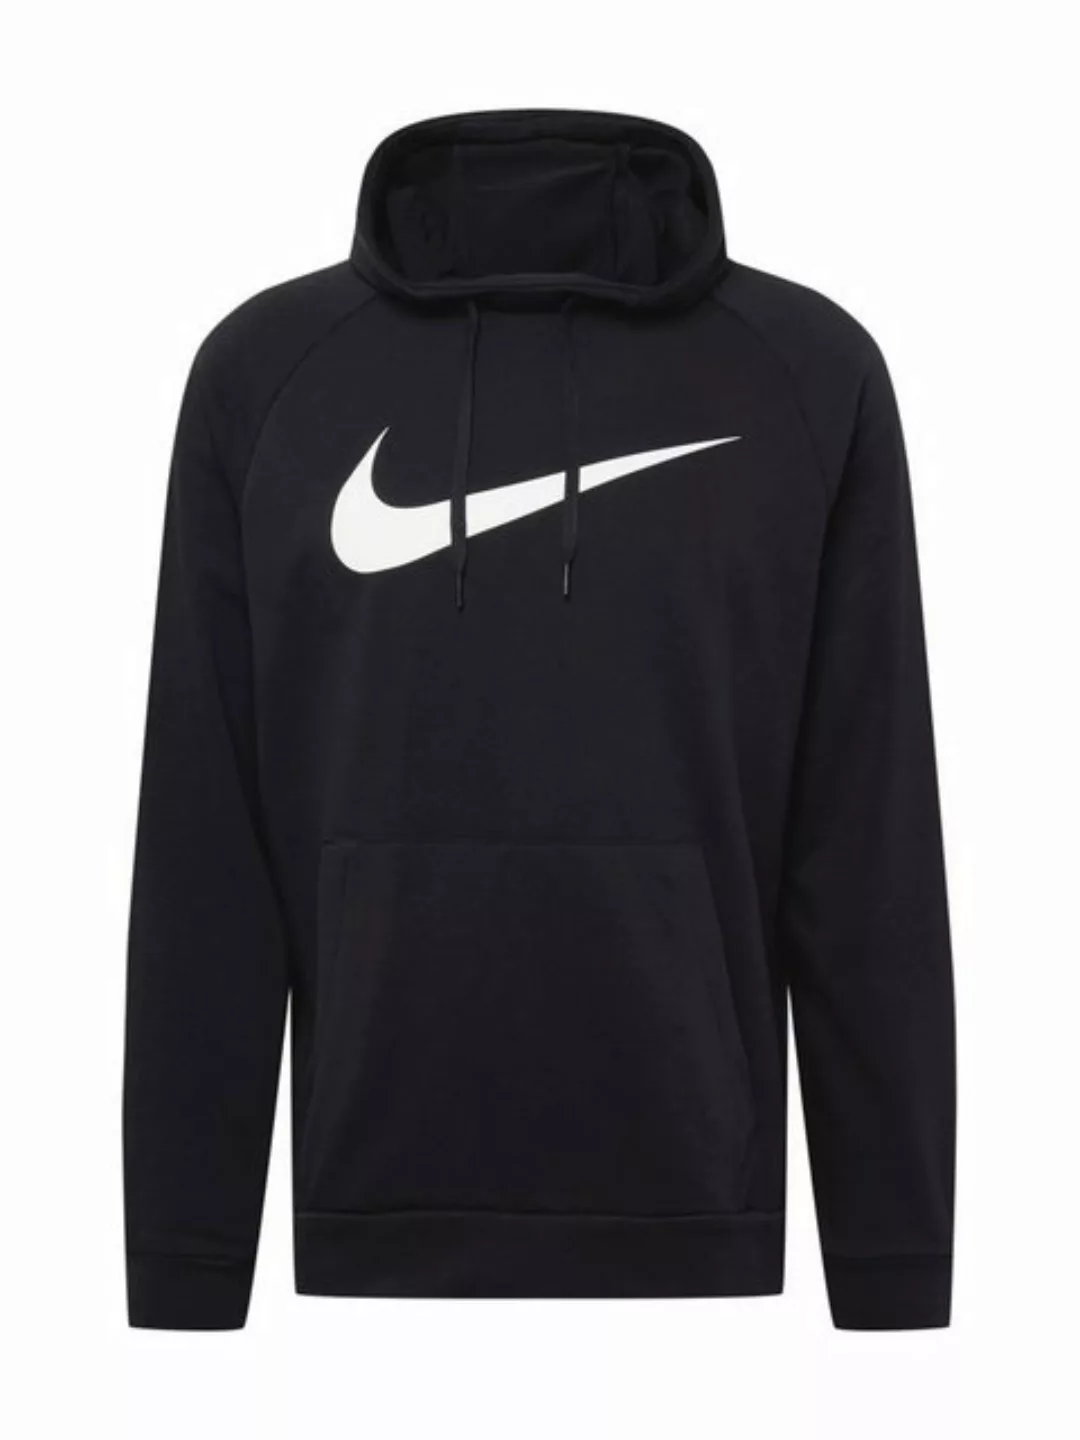 Nike Dri-fit Swoosh Kapuzenpullover 2XL Black / White günstig online kaufen